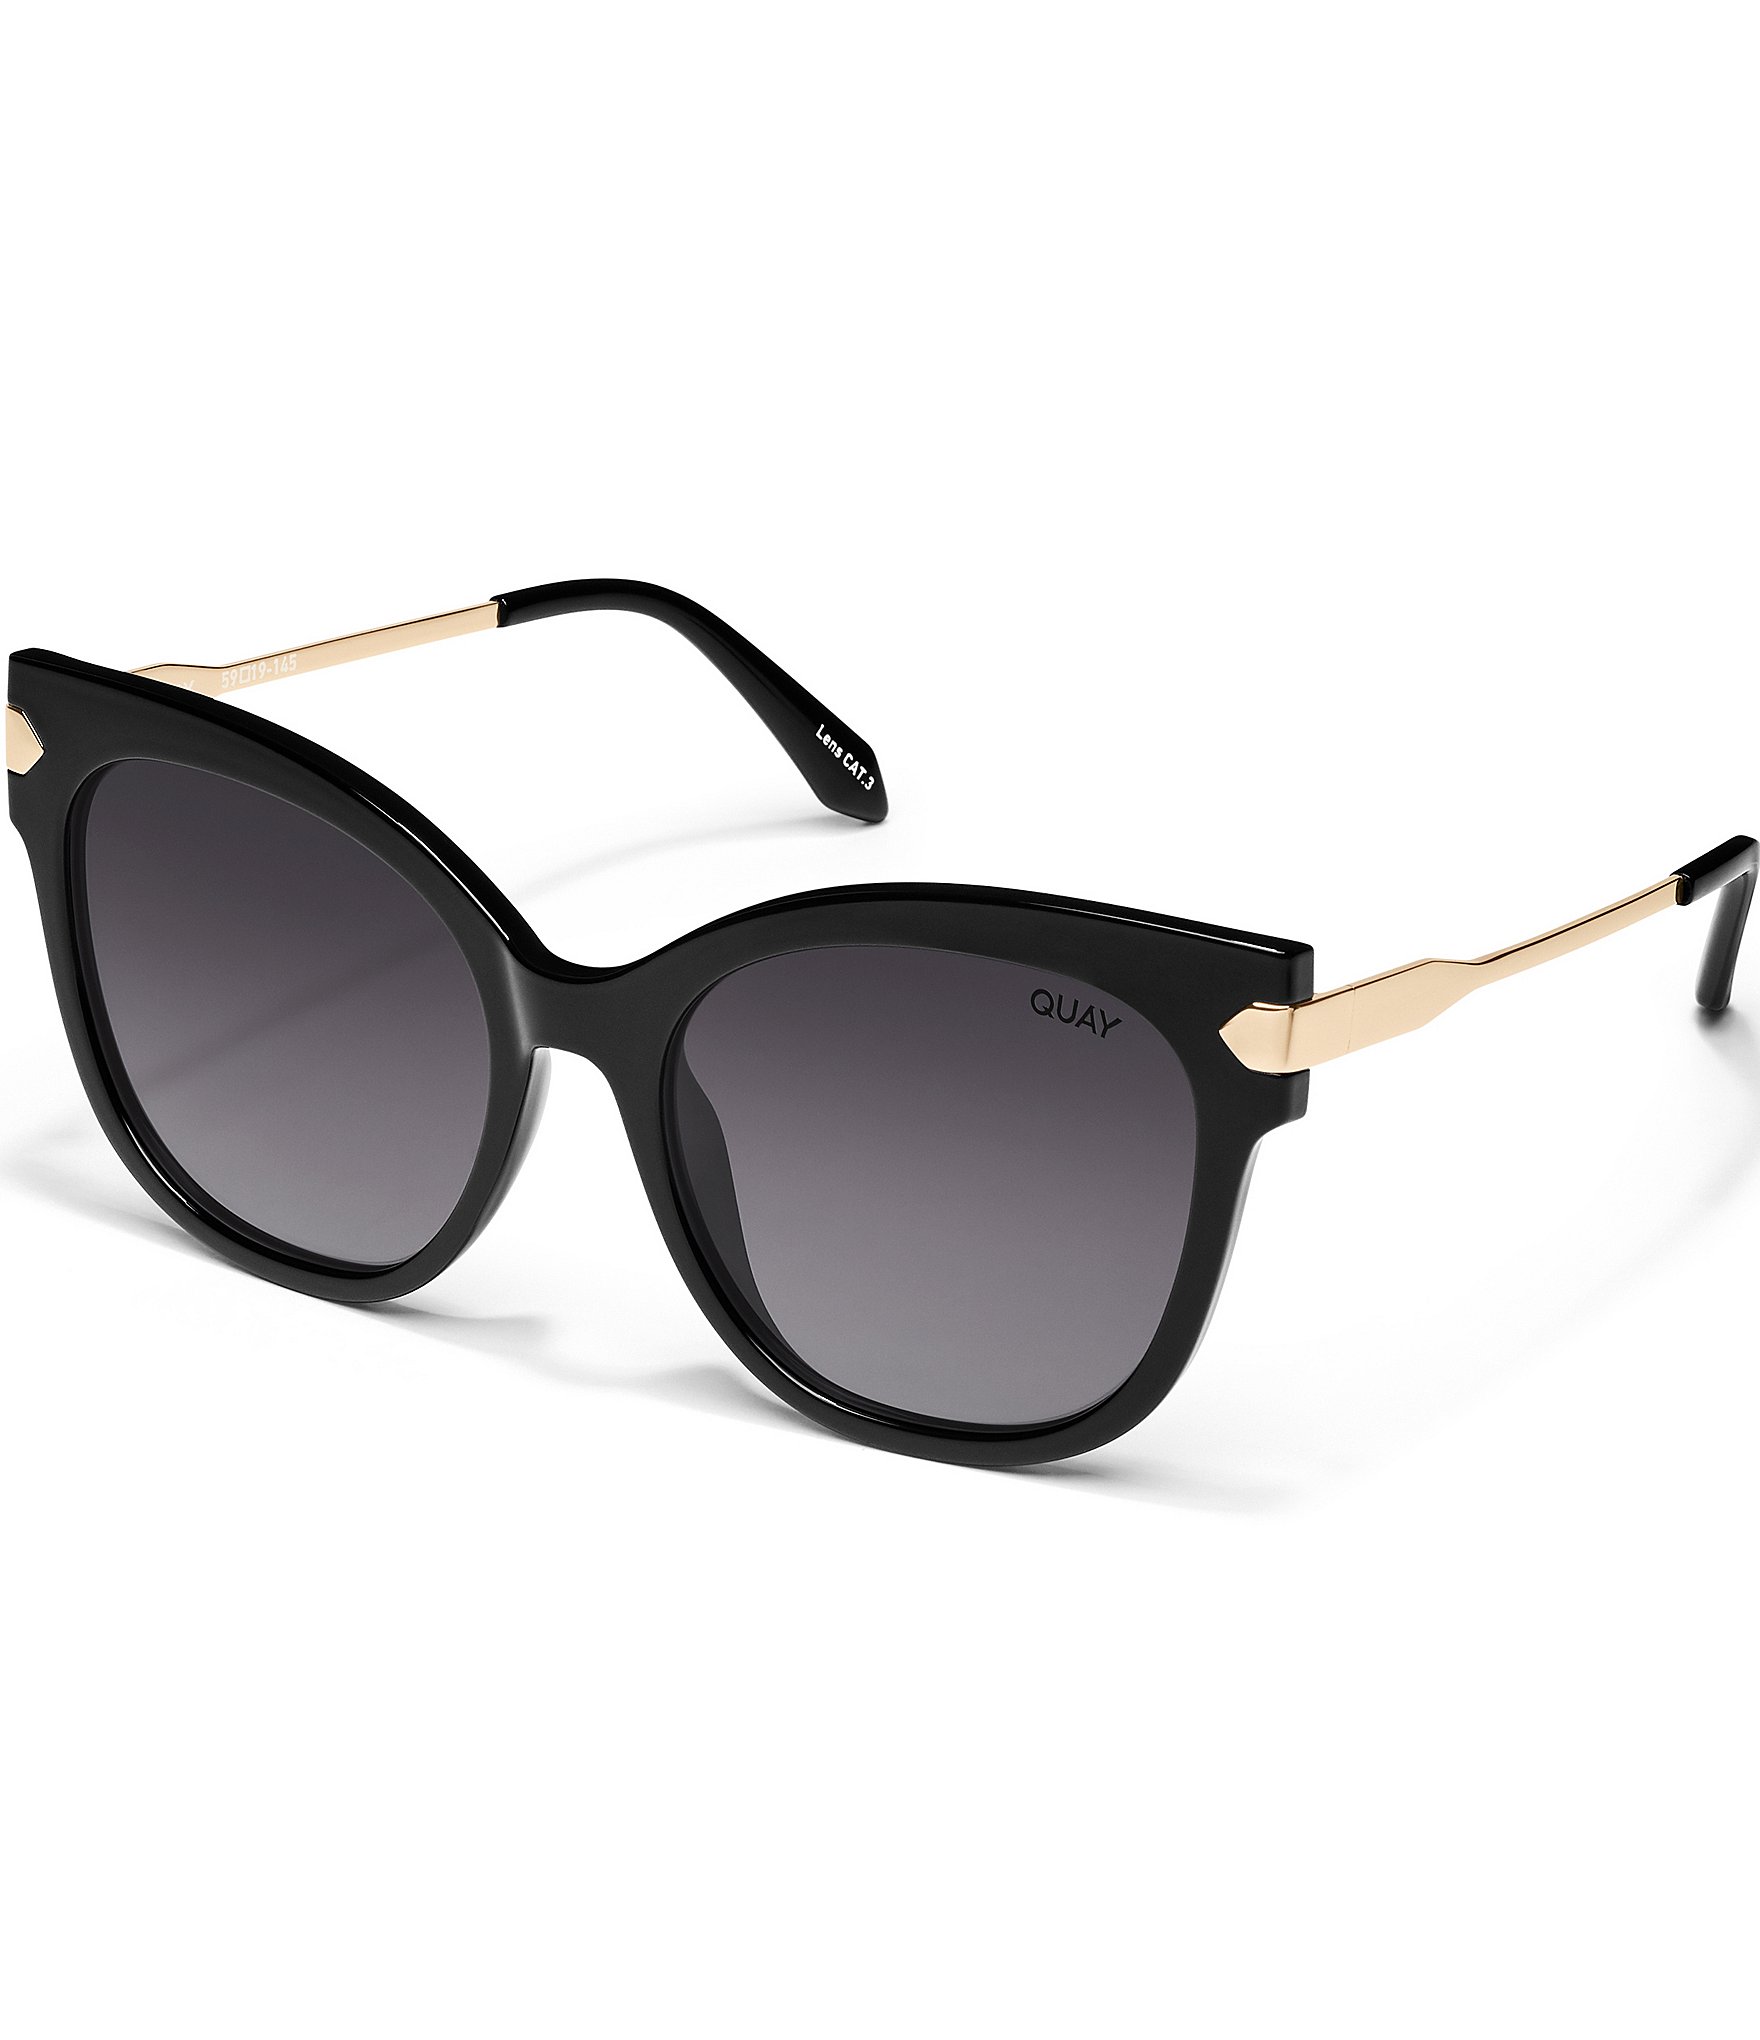 Buy Eymen I Rectangular Sunglasses Black For Boys & Girls Online @ Best  Prices in India | Flipkart.com